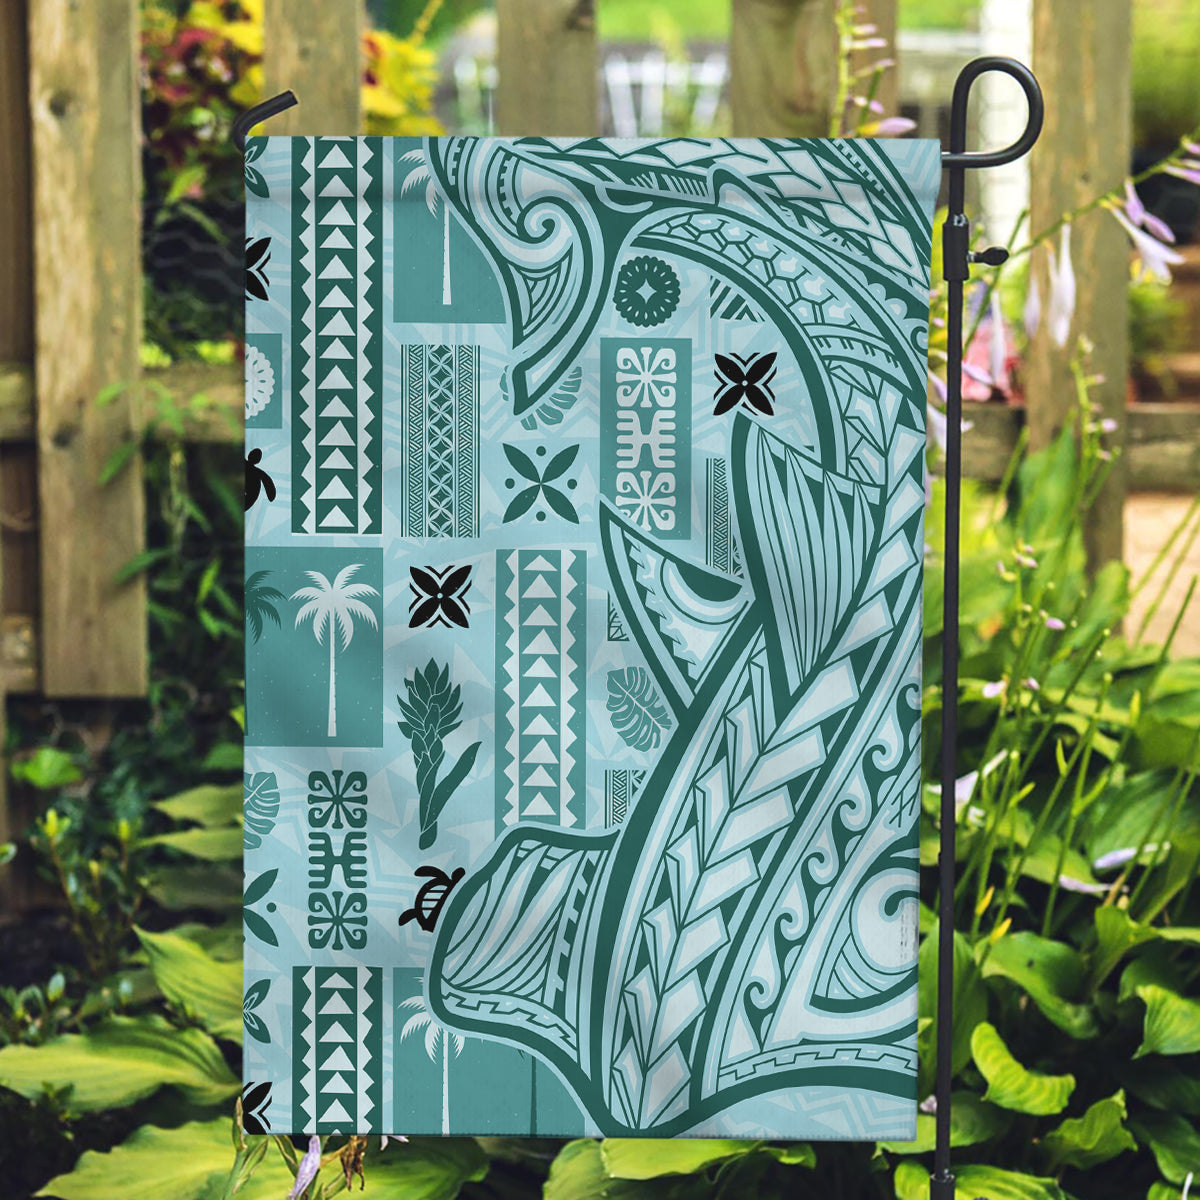 Samoa Tapa Garden Flag Siapo Mix Tatau Patterns - Teal LT7 Garden Flag Teal - Polynesian Pride